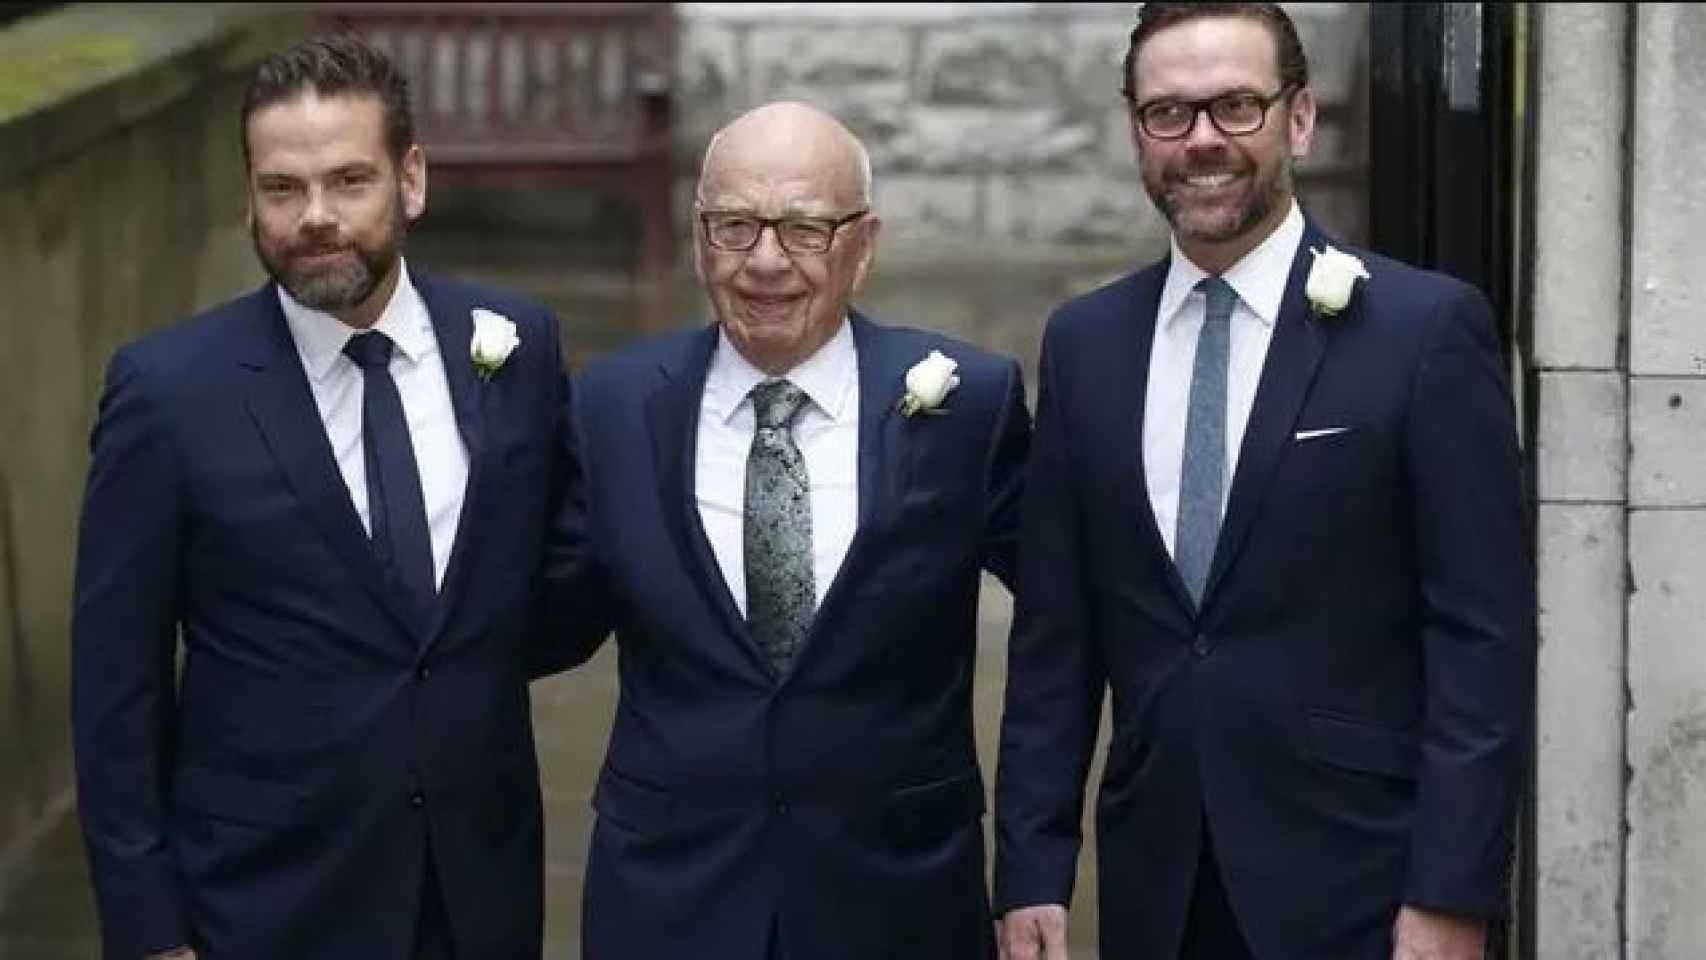 Rupert Murdoch, en el centro de la imagen, flanqueado por sus hijos Lanchlan (i.) y James (d.).